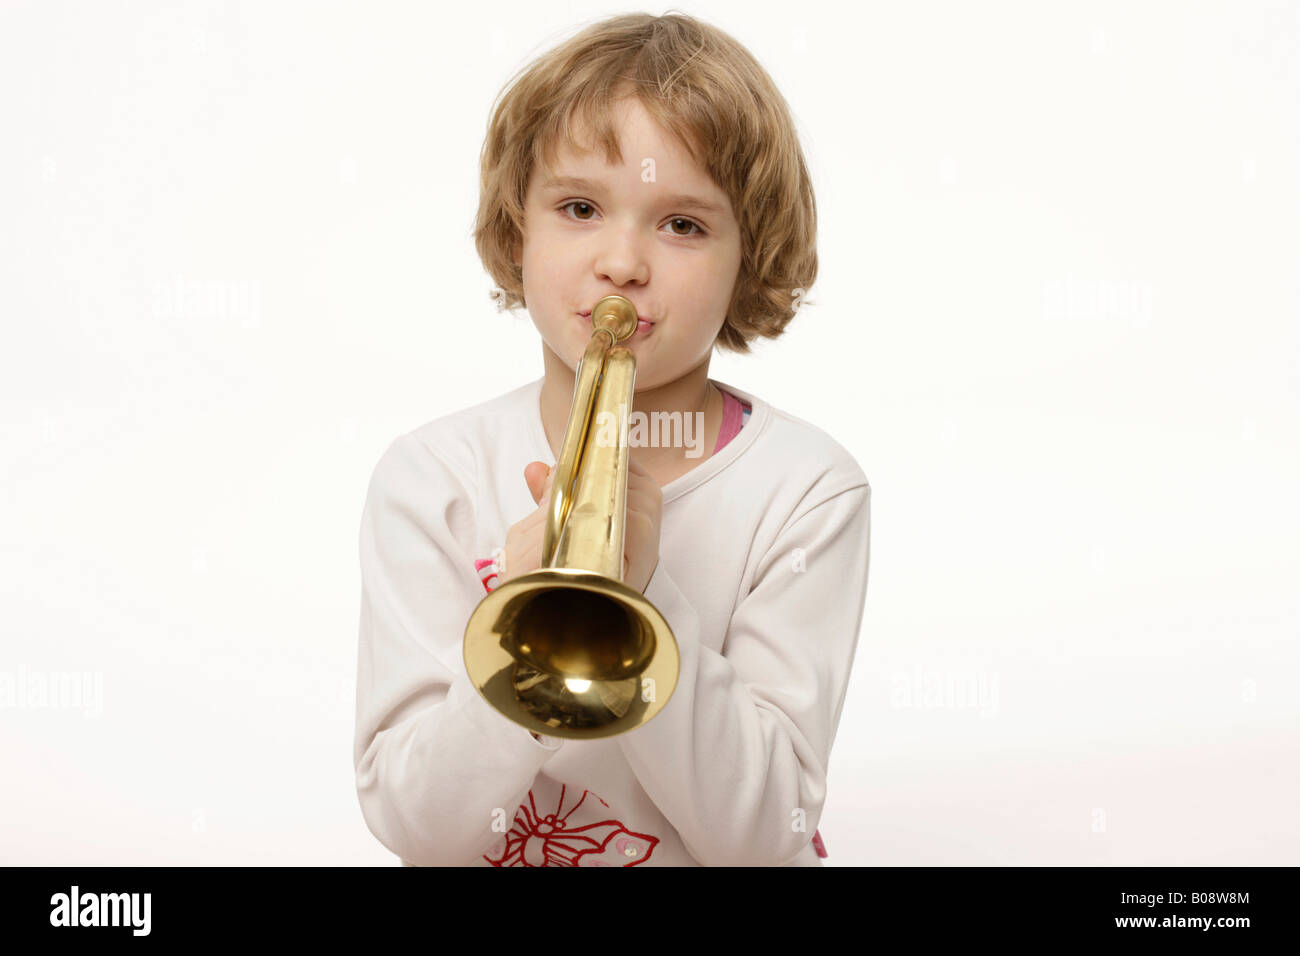 Châtains, fillette de 8 ans à jouer de la trompette Banque D'Images